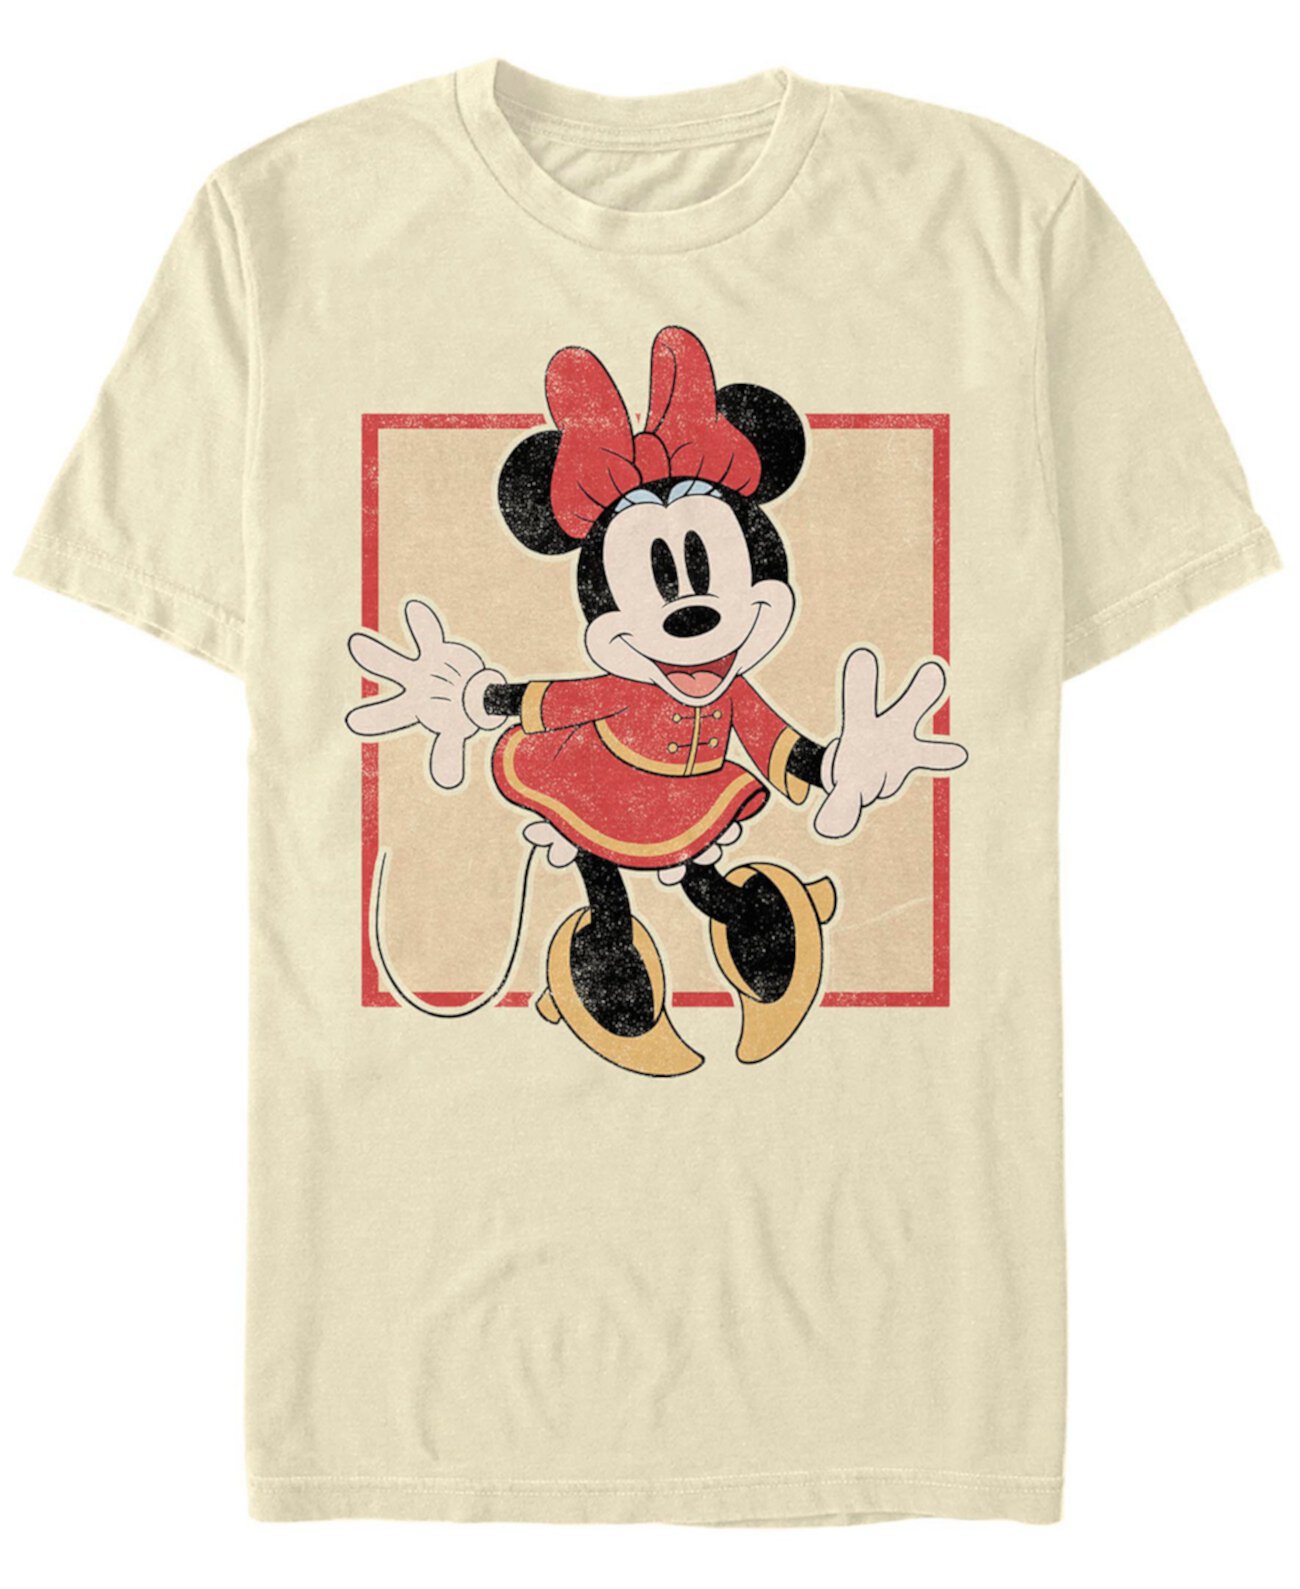 Мужская футболка с короткими рукавами Mickey Classic Chinese Minnie FIFTH SUN